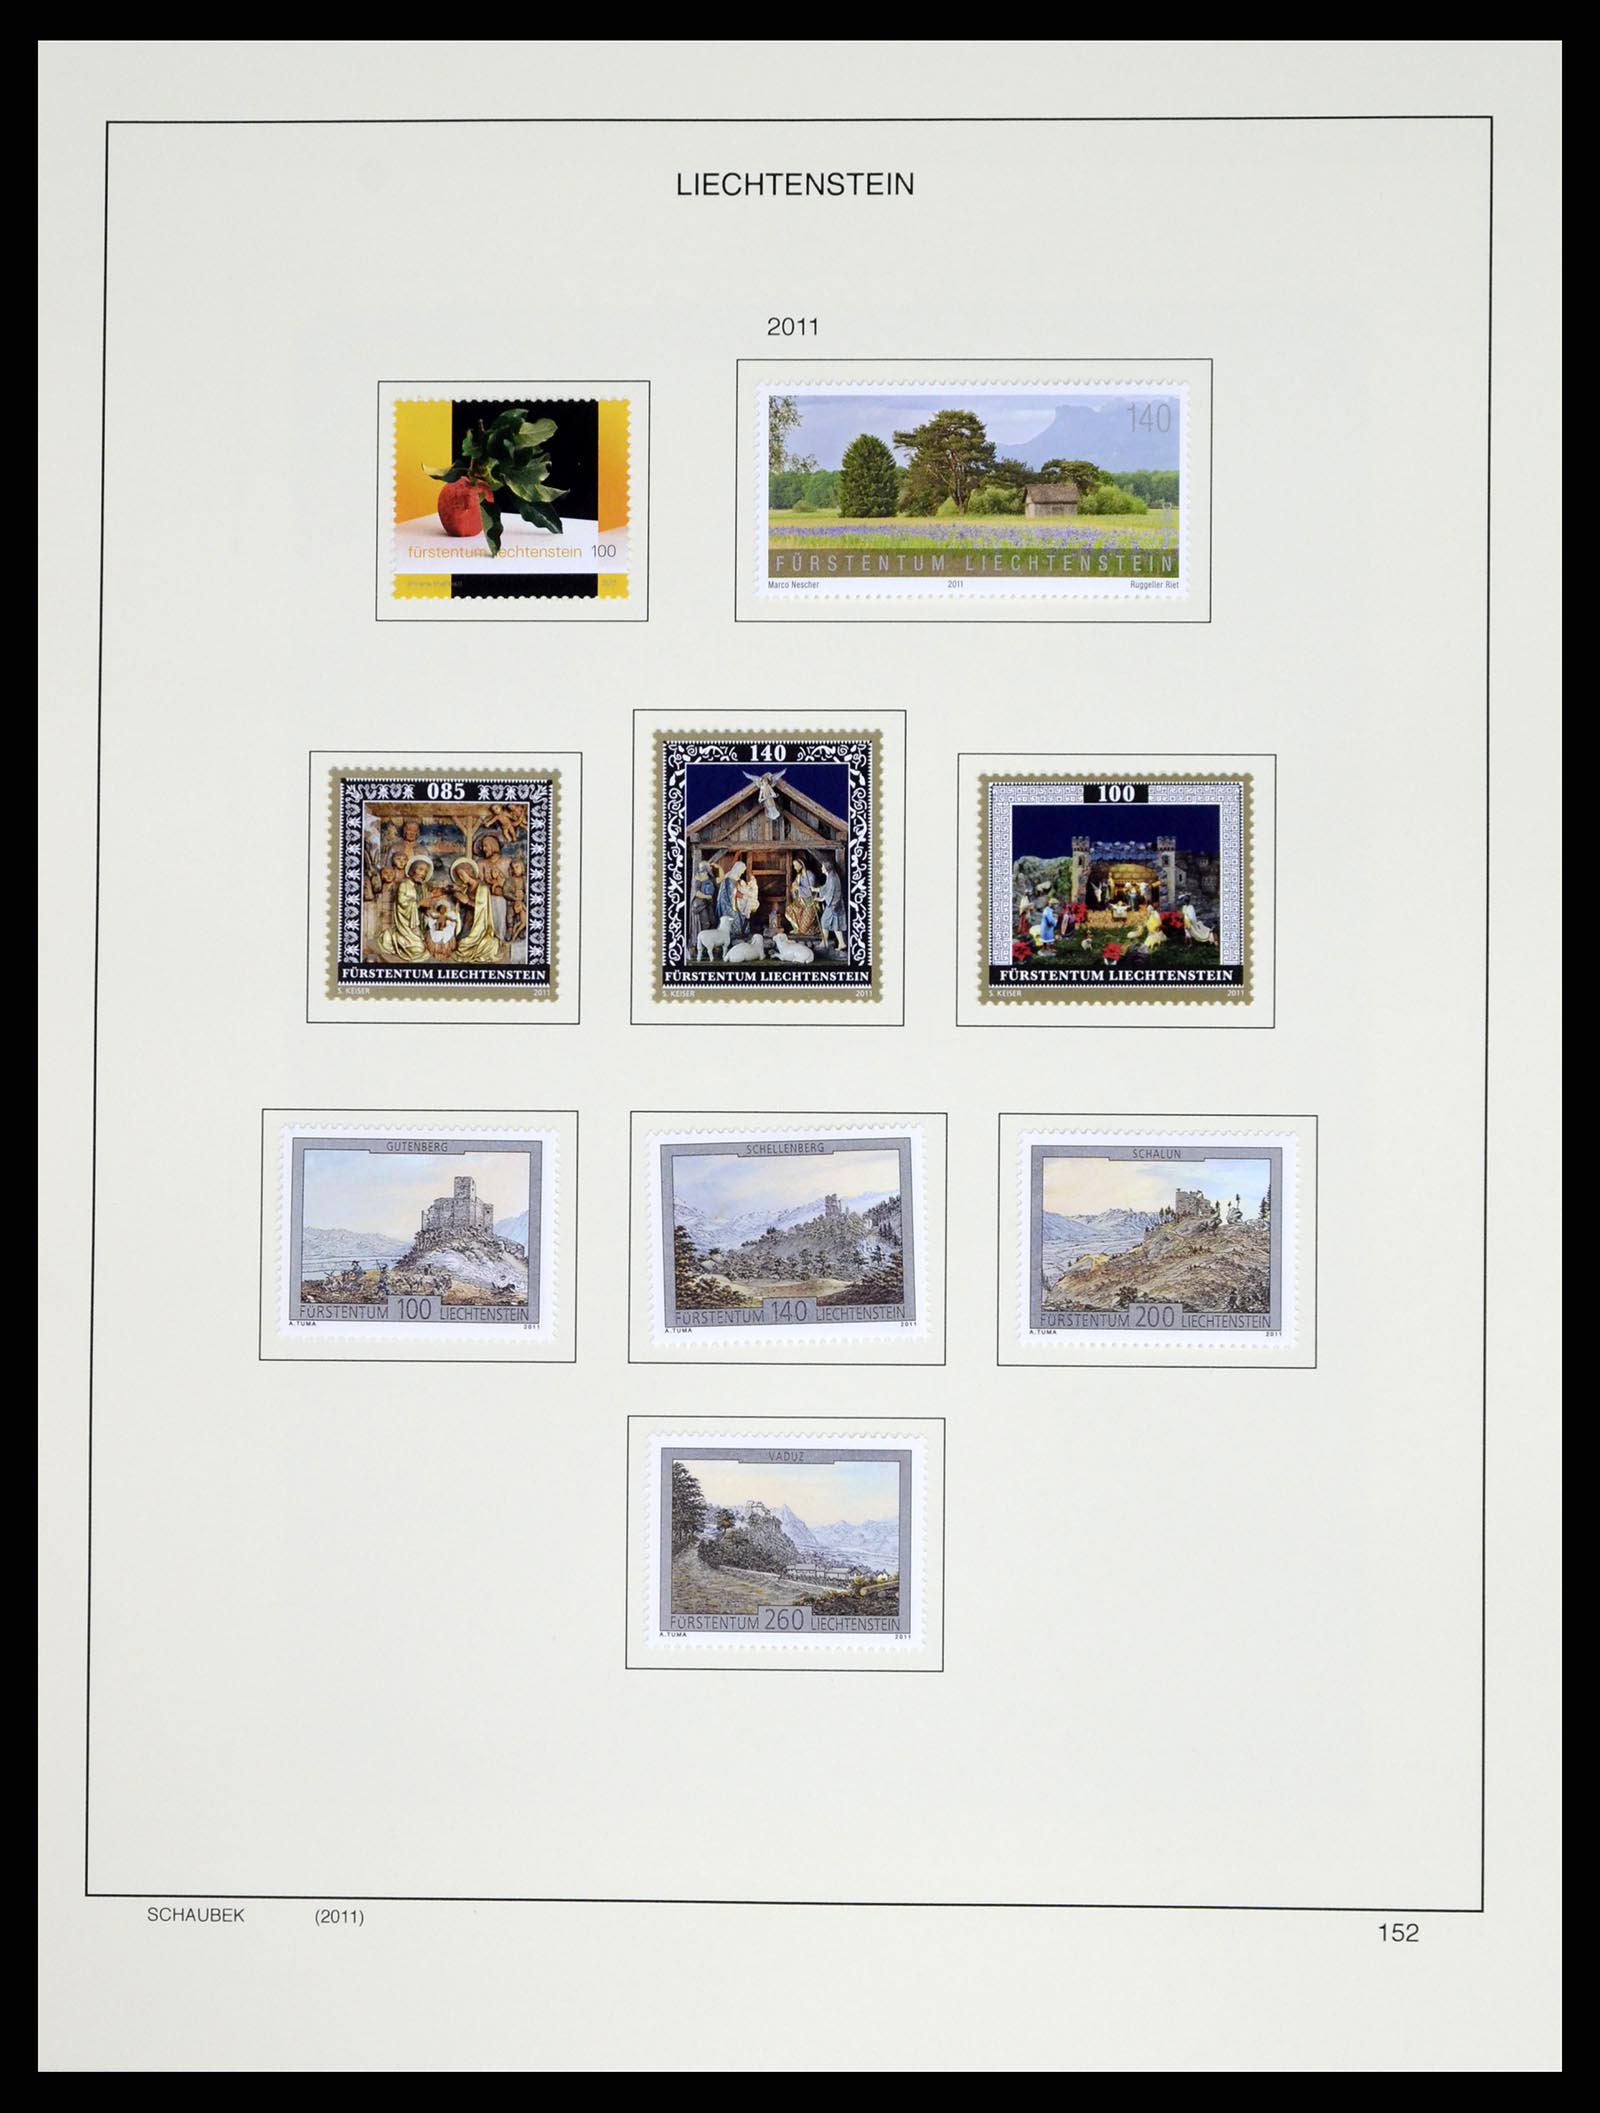 37547 179 - Stamp collection 37547 Liechtenstein 1912-2011.